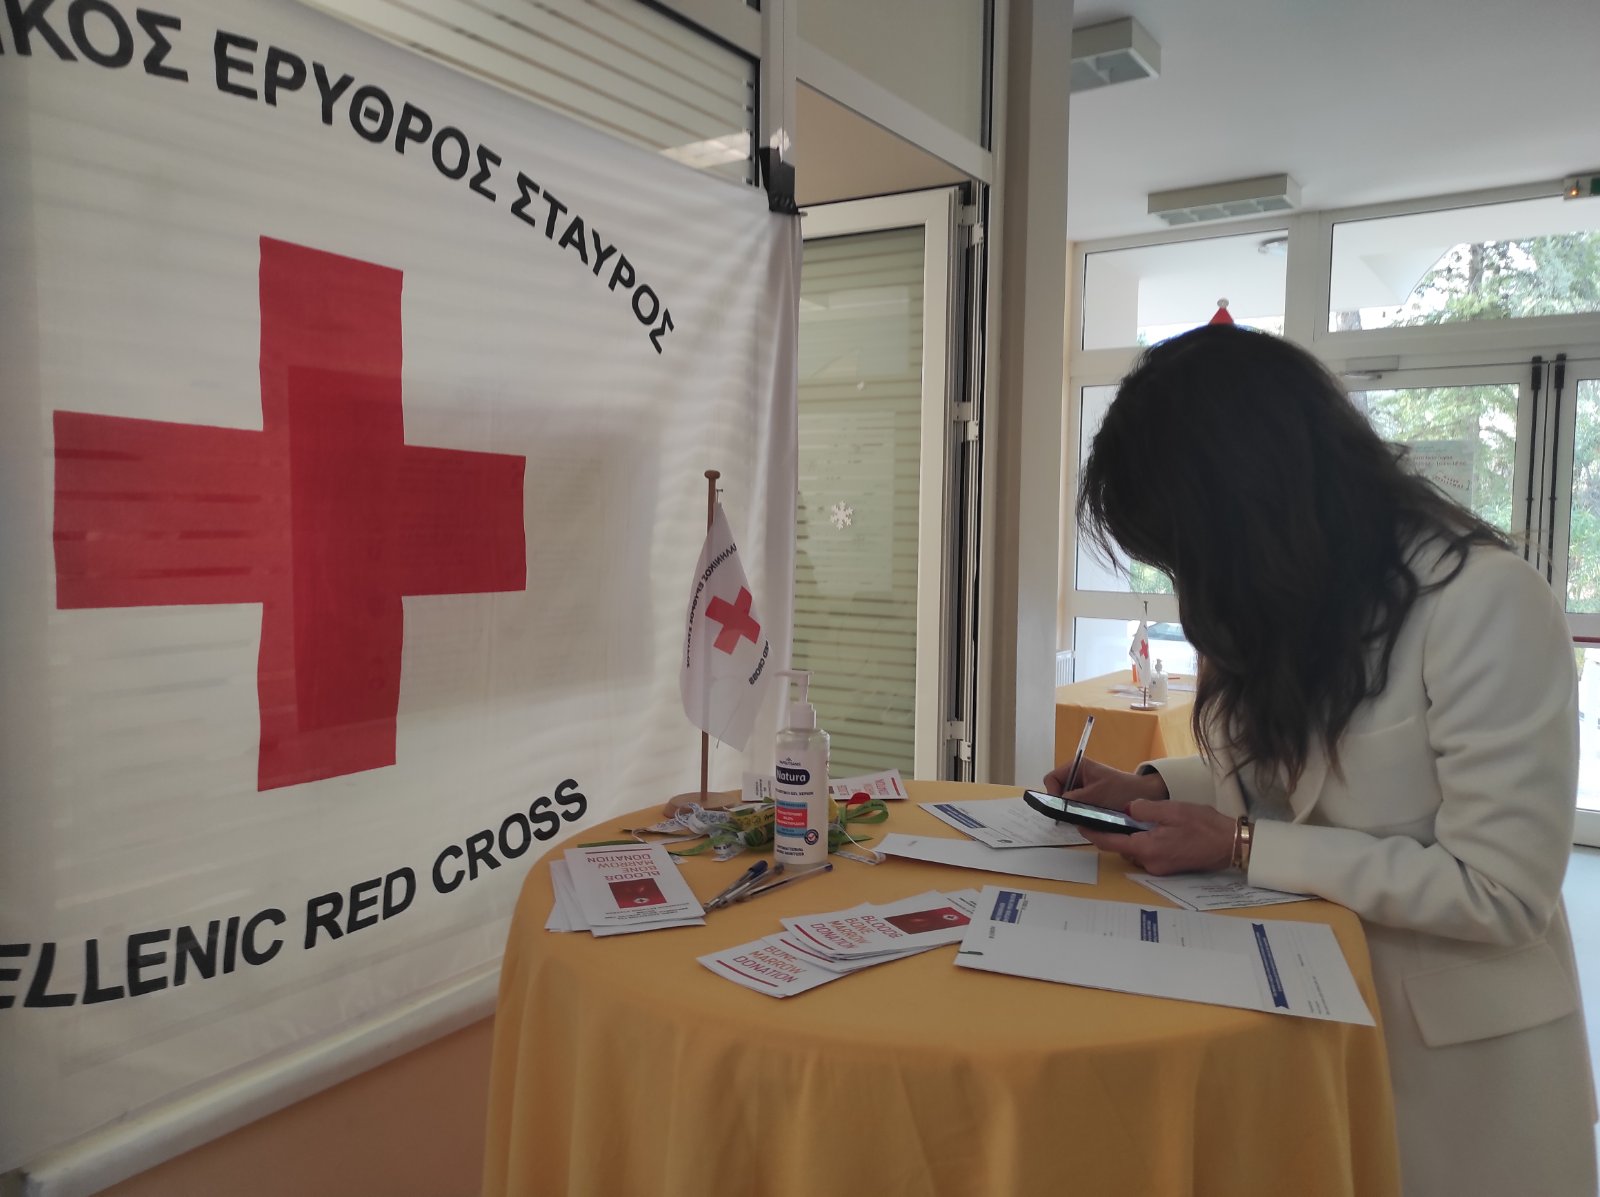 Ο Ελληνικός Ερυθρός Σταυρός διοργάνωσε σεμινάρια Πρώτων Βοηθειών για μαθητές της Ερασμείου Ελληνογερμανικής Σχολής